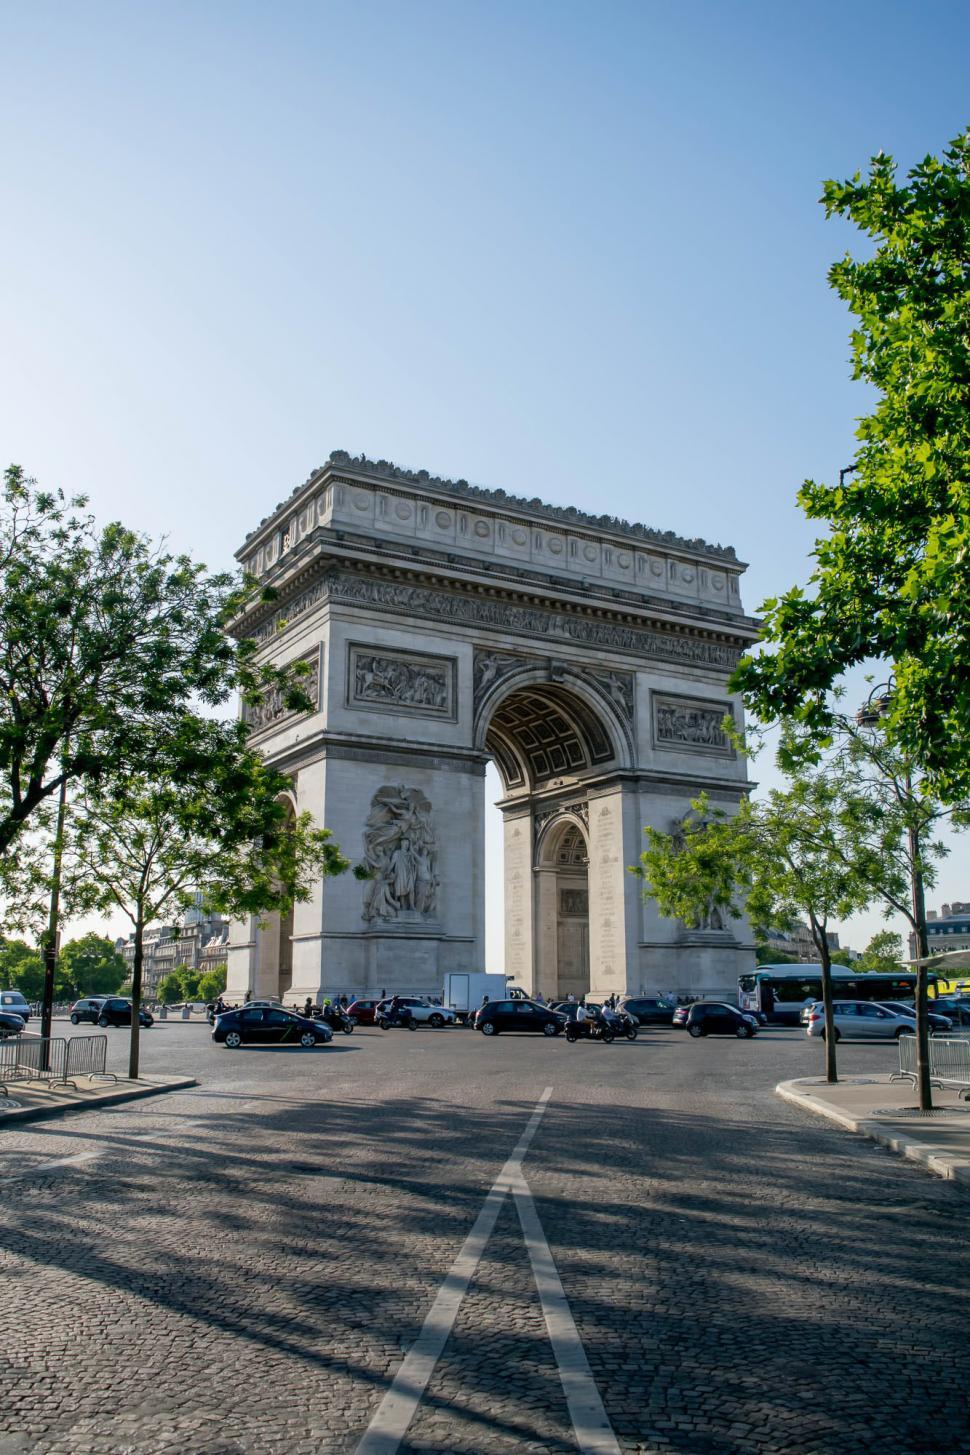 Free Image of Arc de Triomphe - Paris, France 